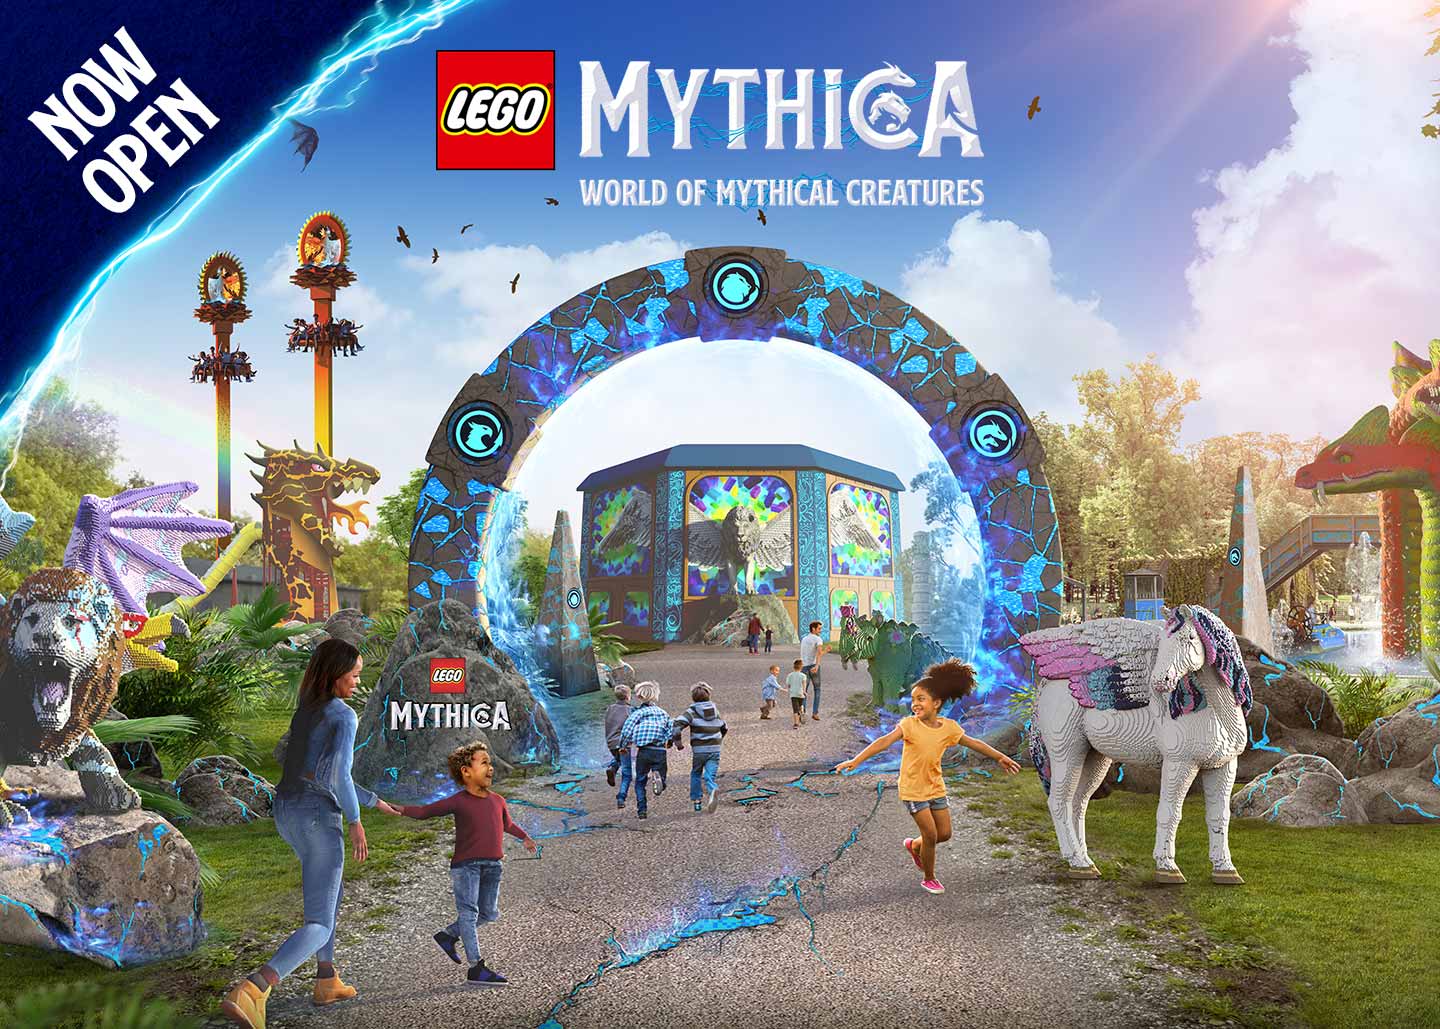 LEGO MYTHICA at the LEGOLAND Windsor Resort